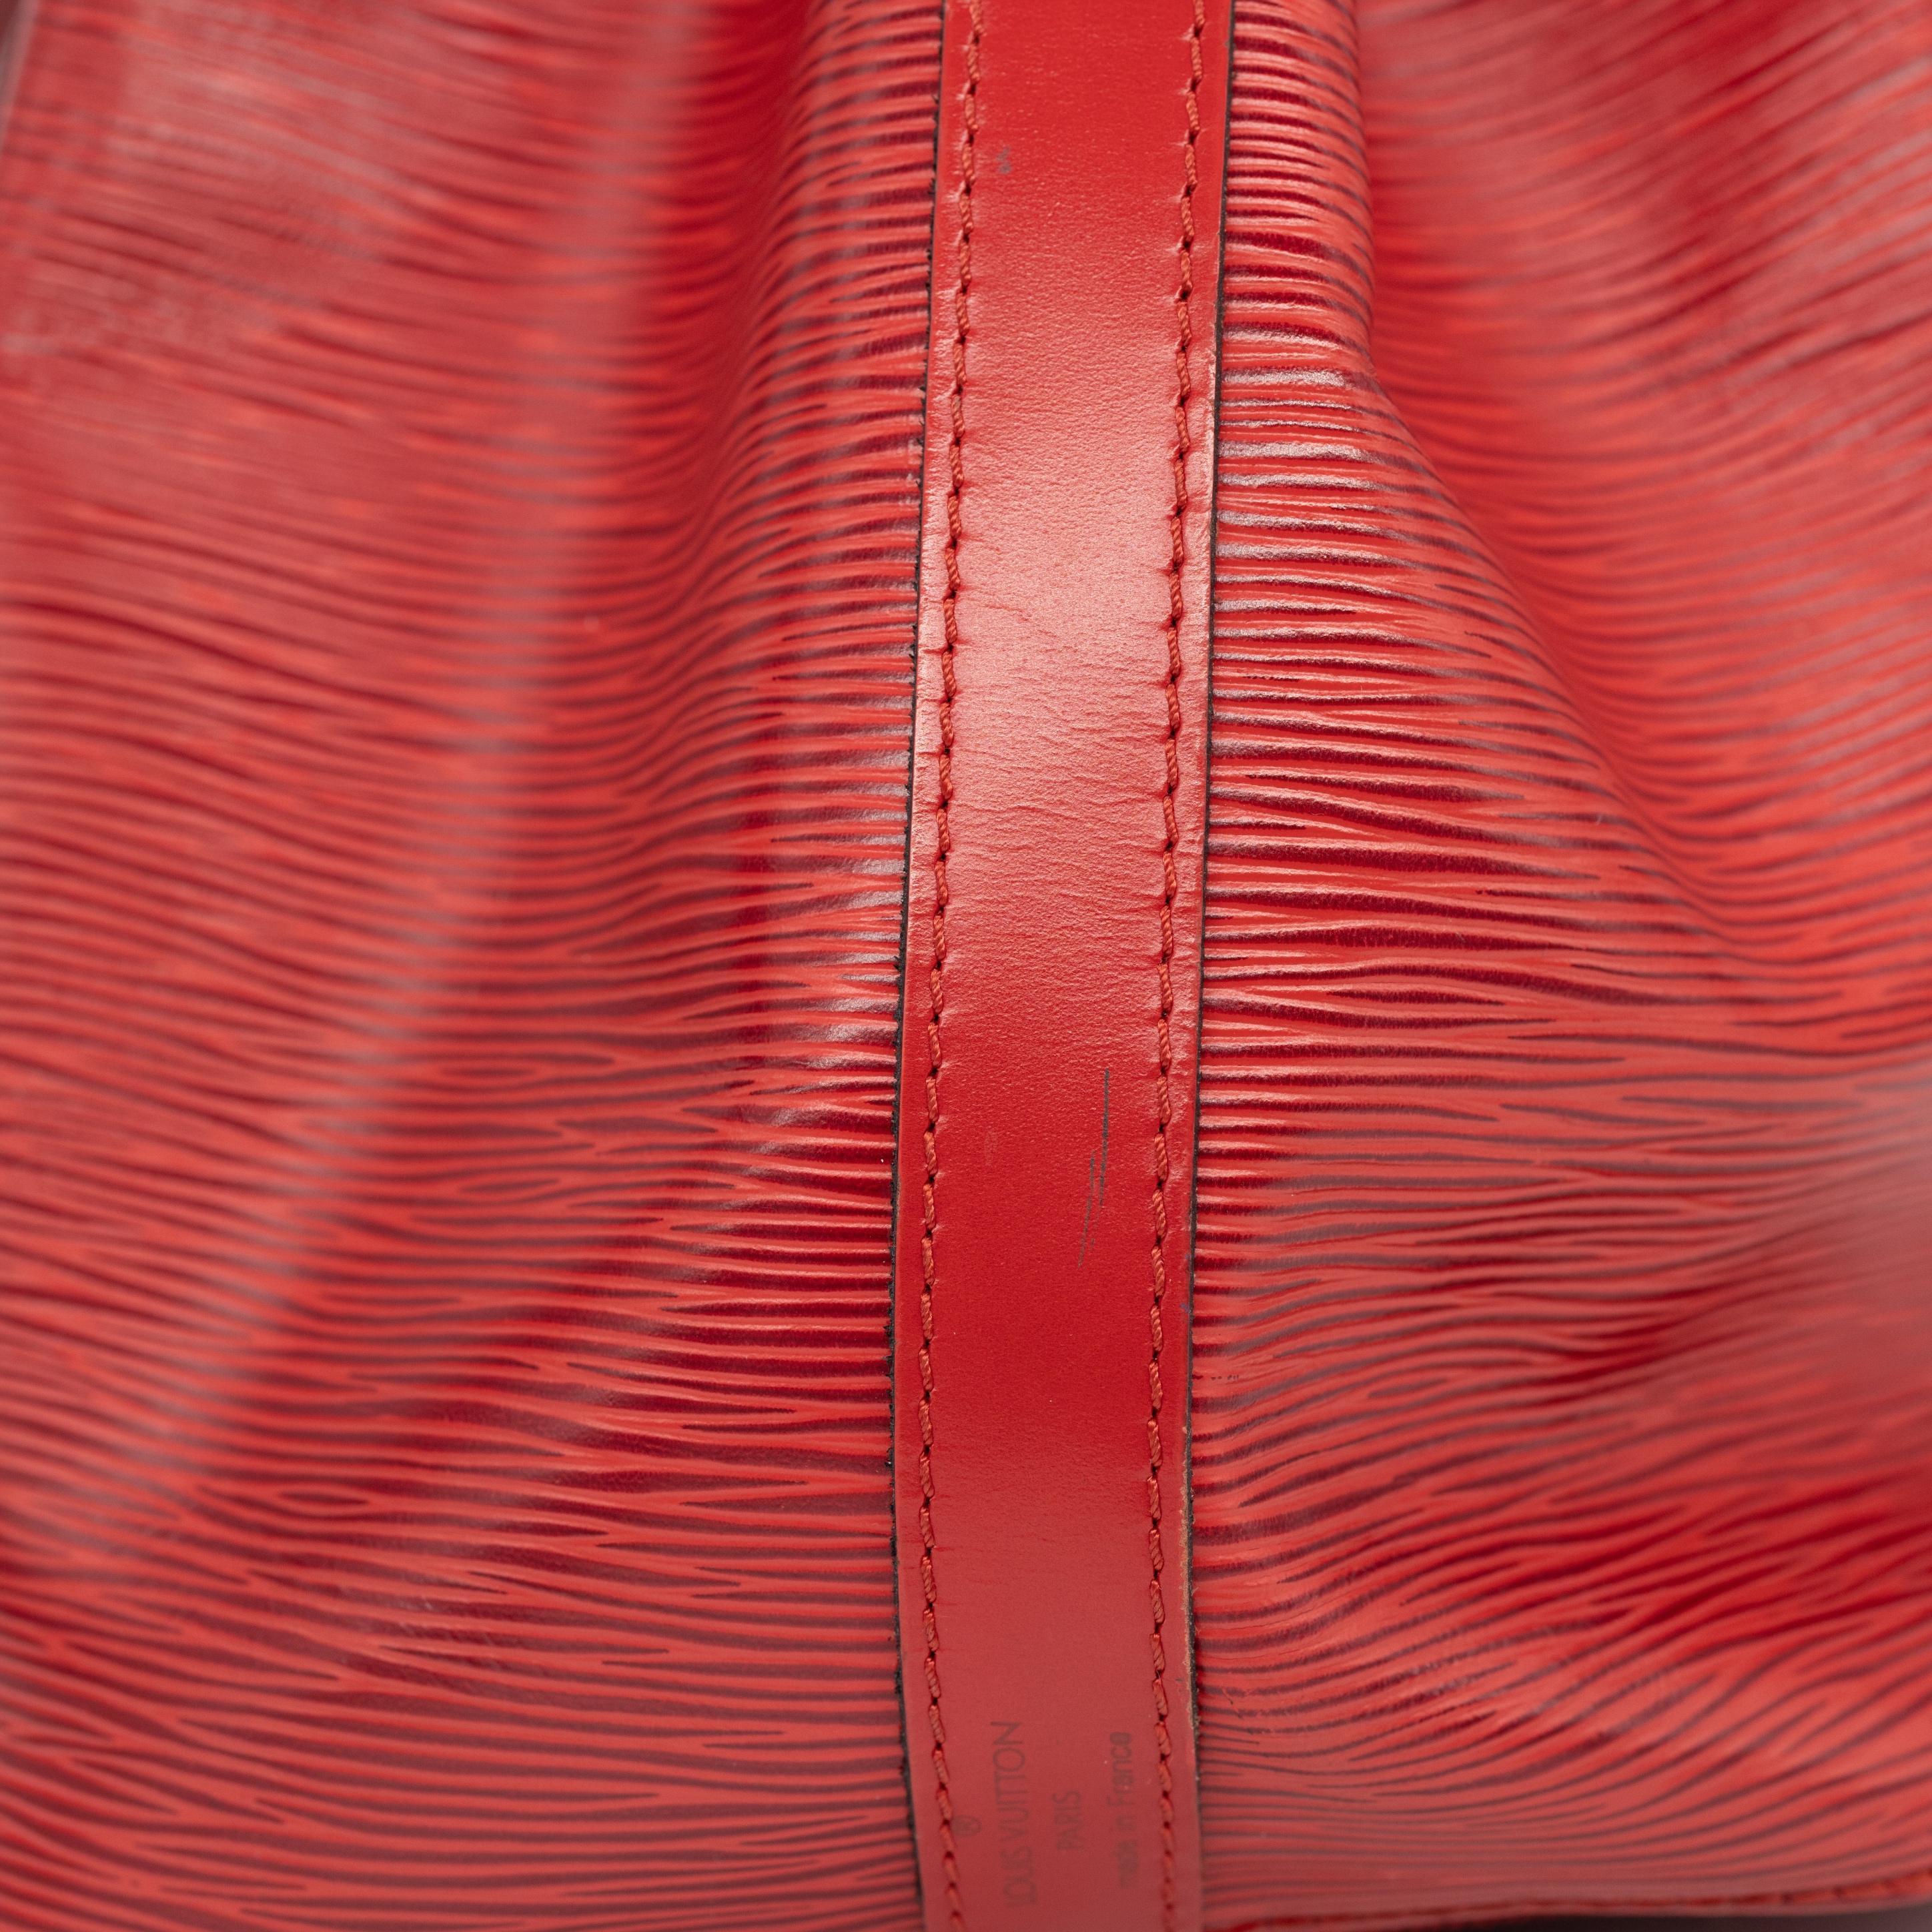 Louis Vuitton “Noe” PM Bucket Bag in Red EPI Leather Shoulder Bag, France 1993. 5